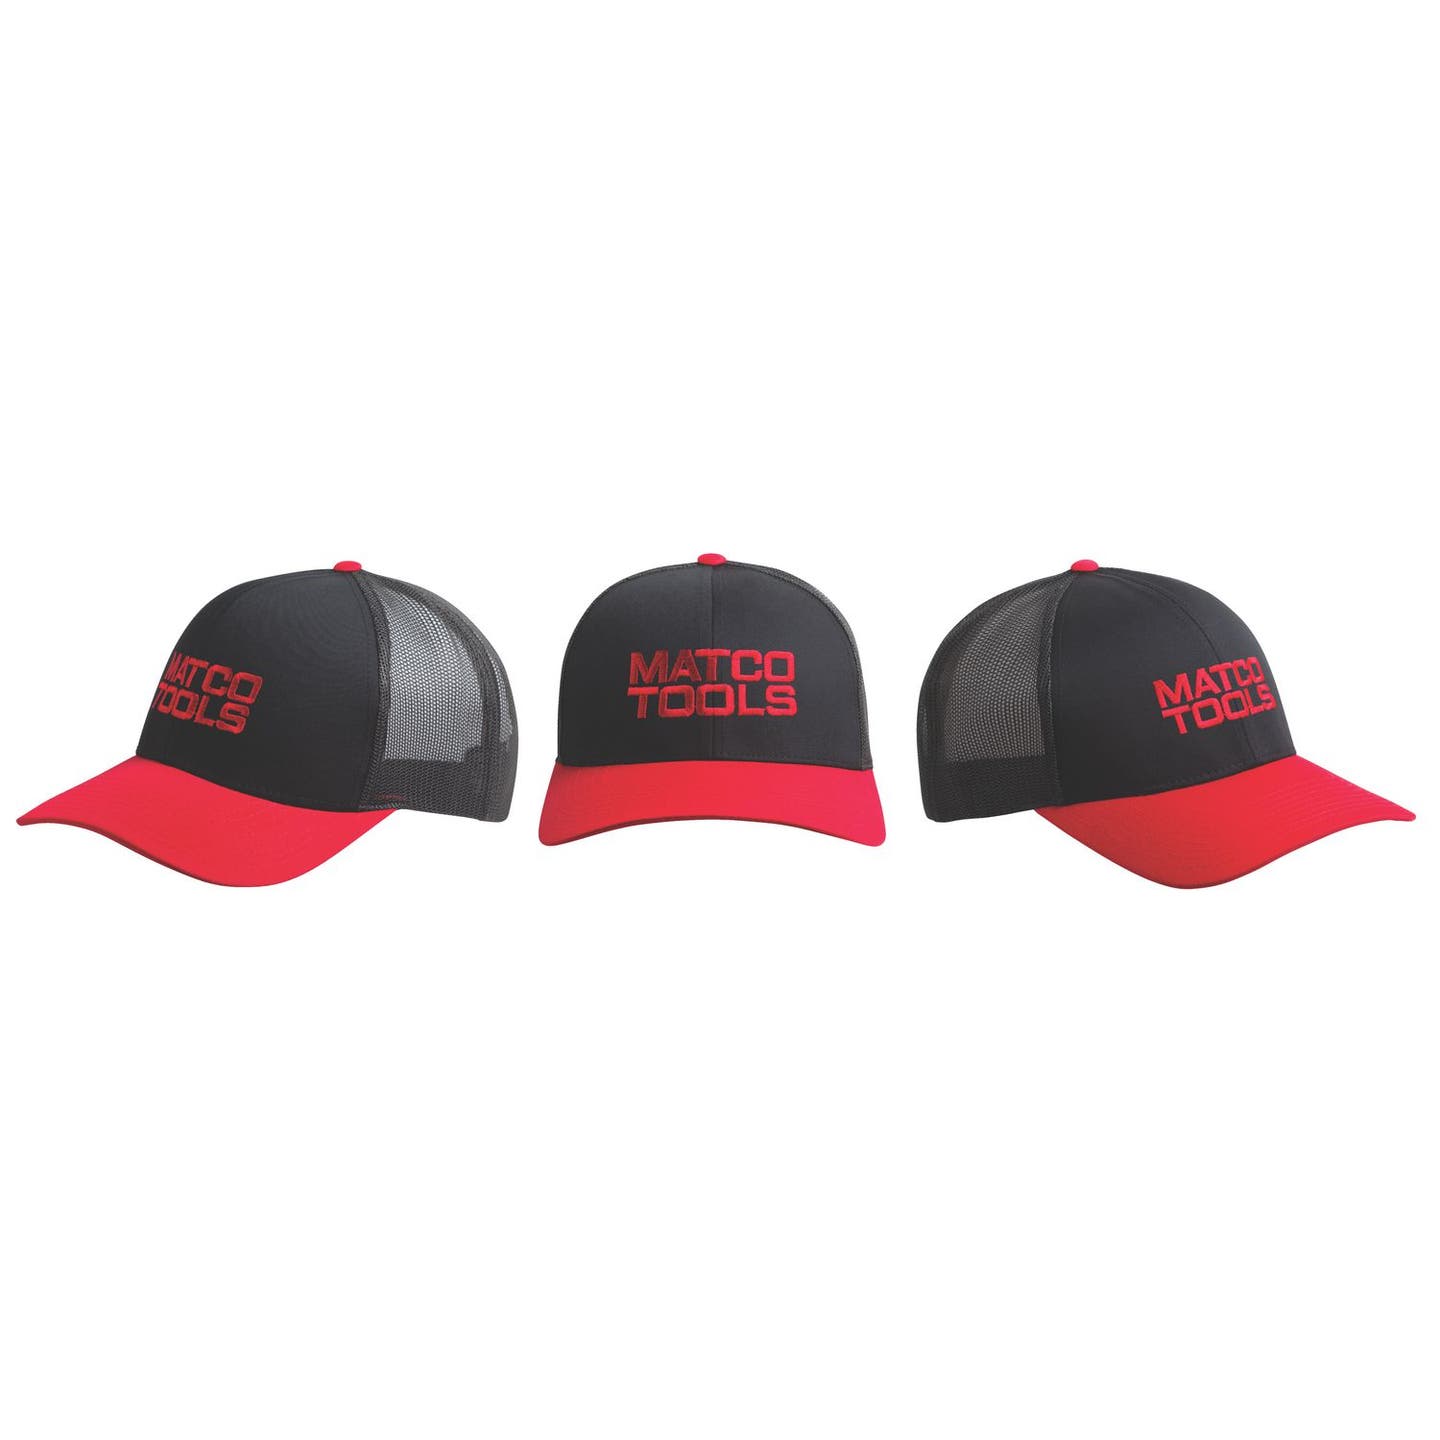 BLACK/RED TRUCKER HAT